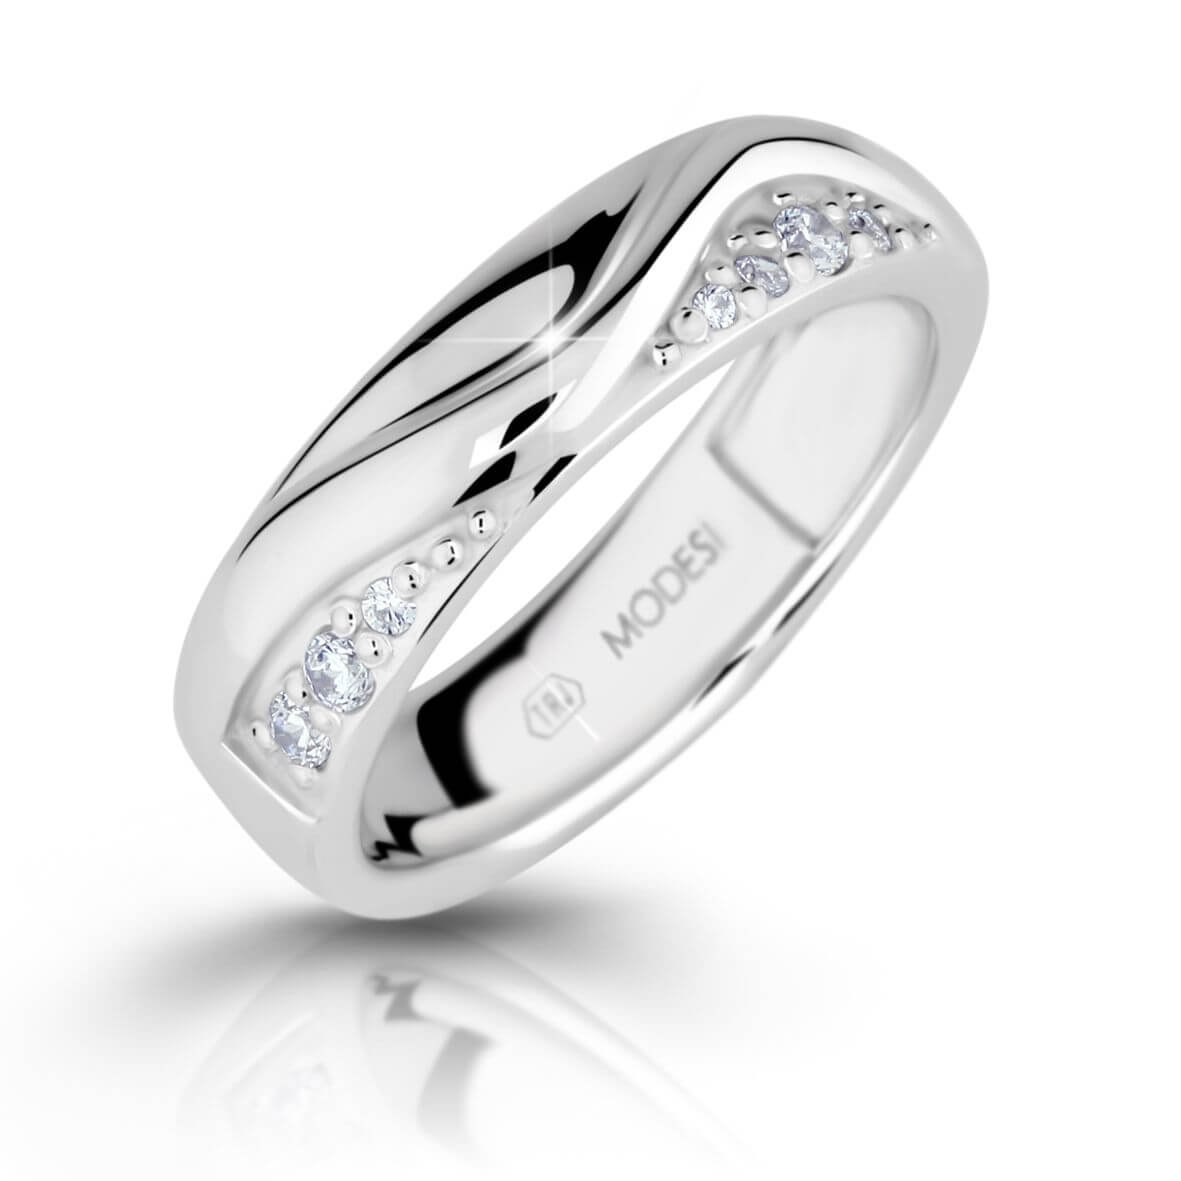 Modesi Módní stříbrný prsten se zirkony M16026 54 mm